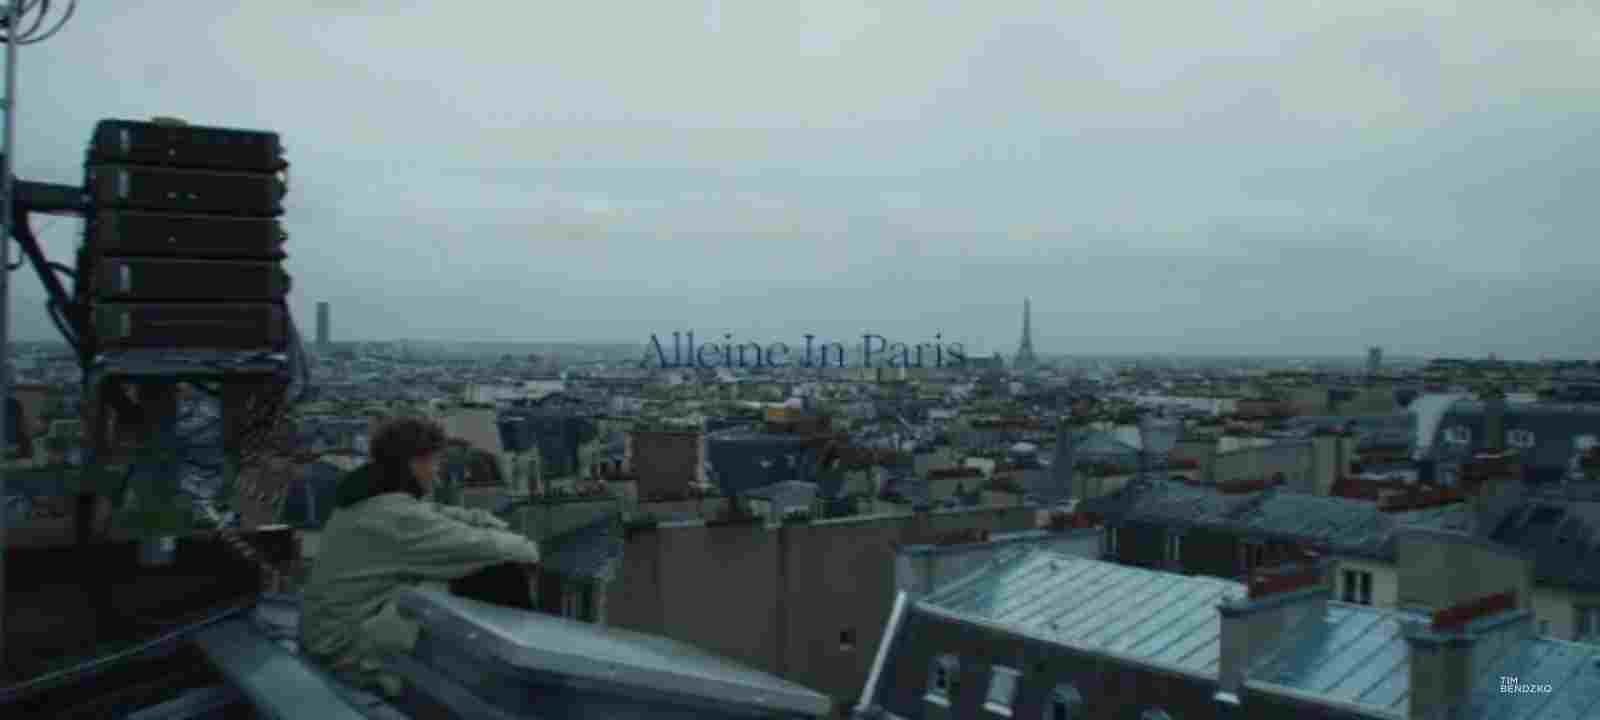 Alleine In Paris